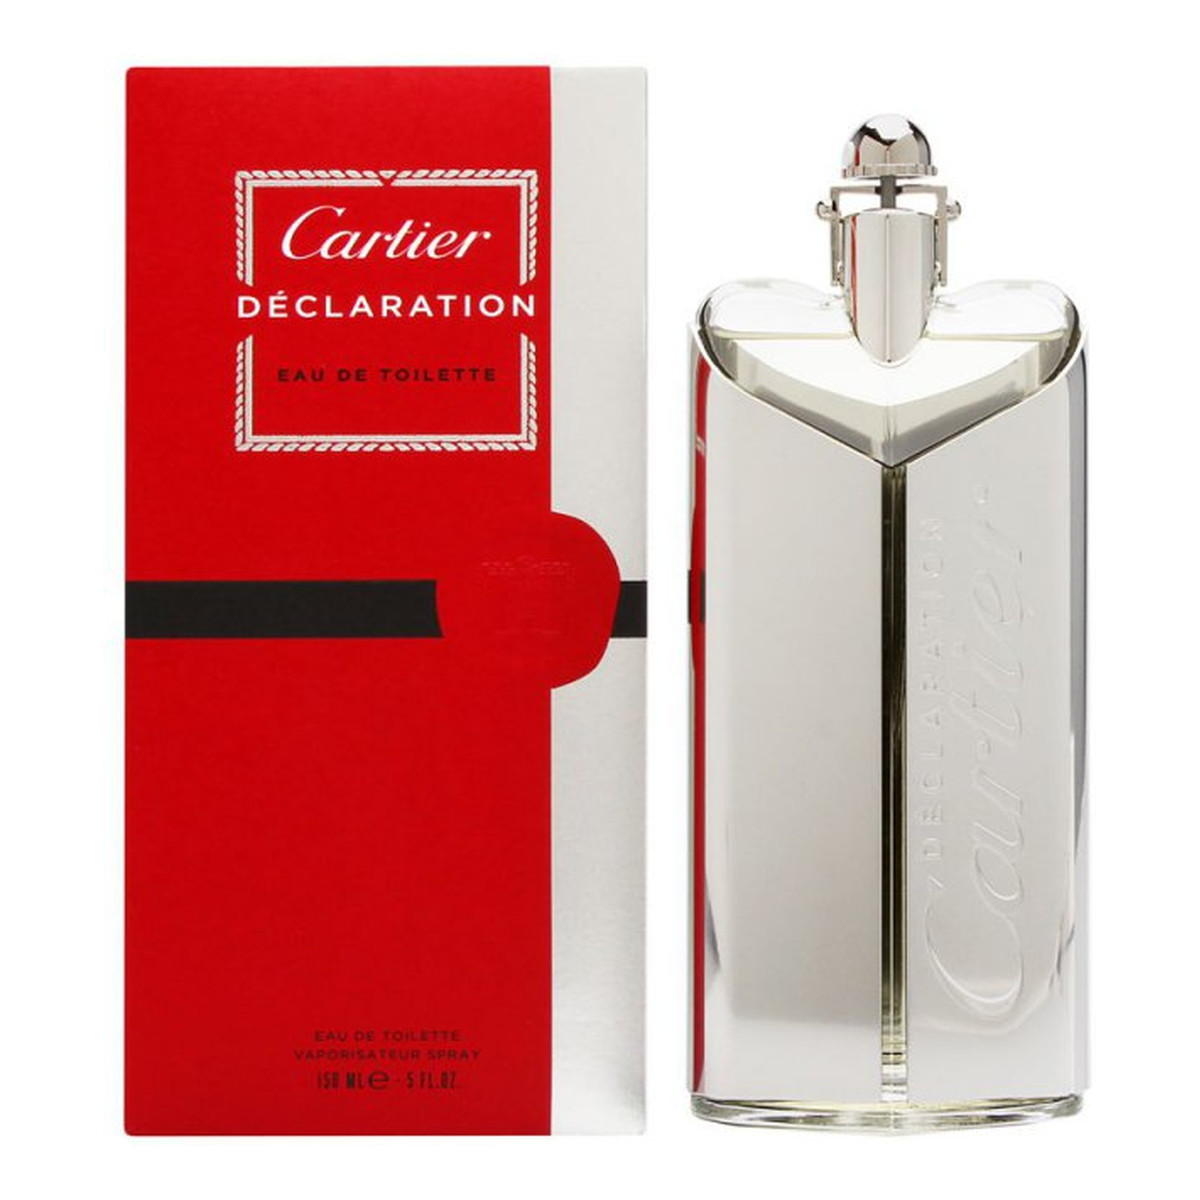 Cartier Declaration Edycja limitowana woda toaletowa spray 150ml